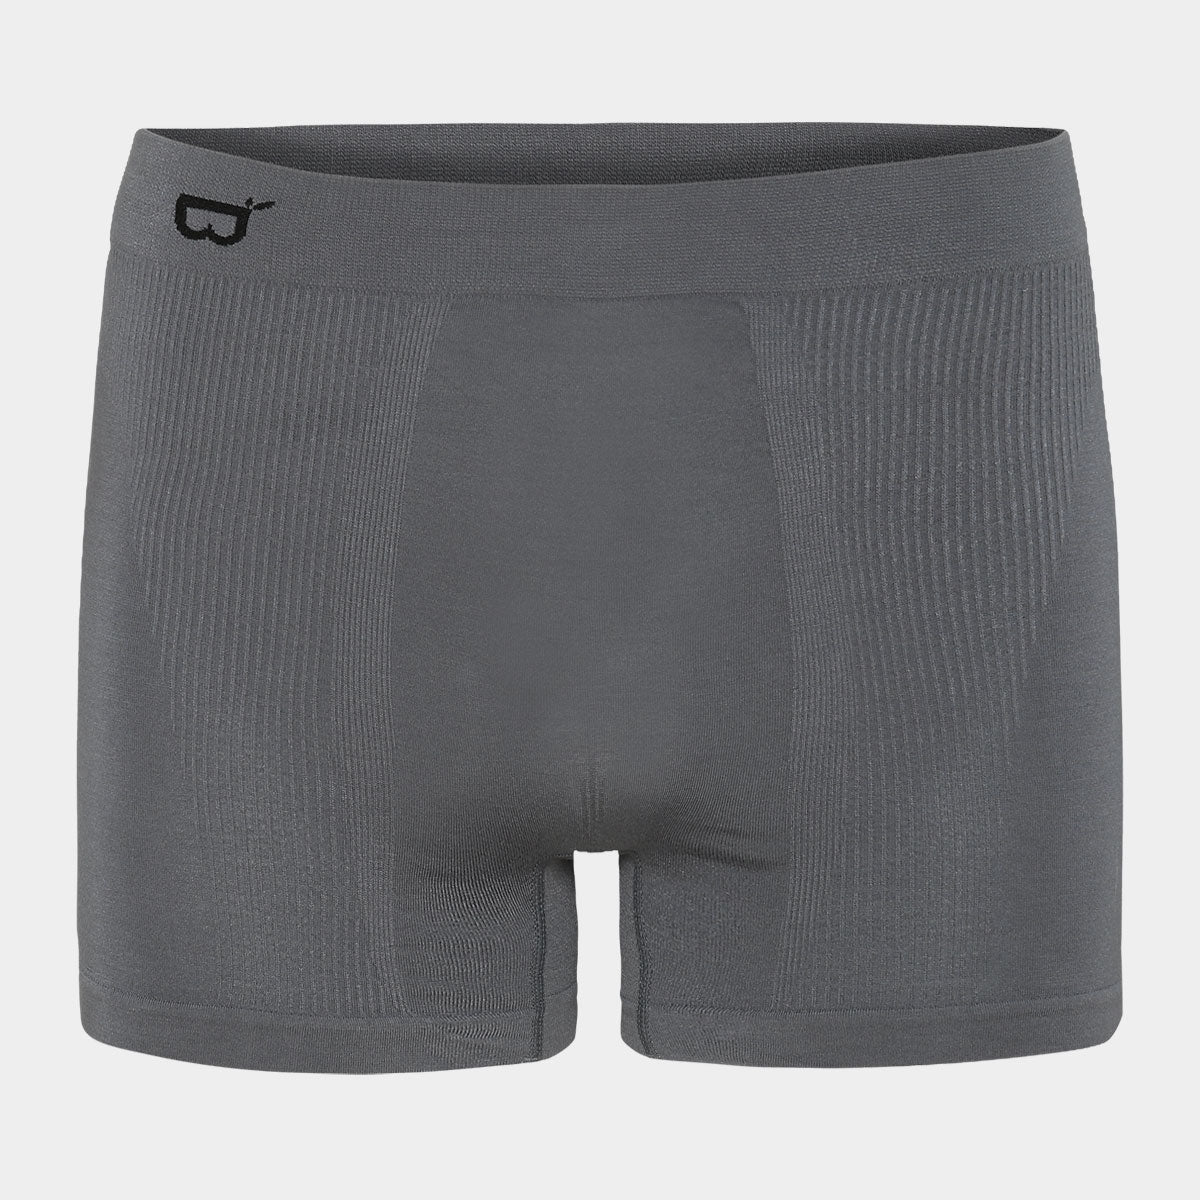 Se Mørkegrå sømløse bambus underbukser til mænd fra Boody, XL hos Bambustøj.dk